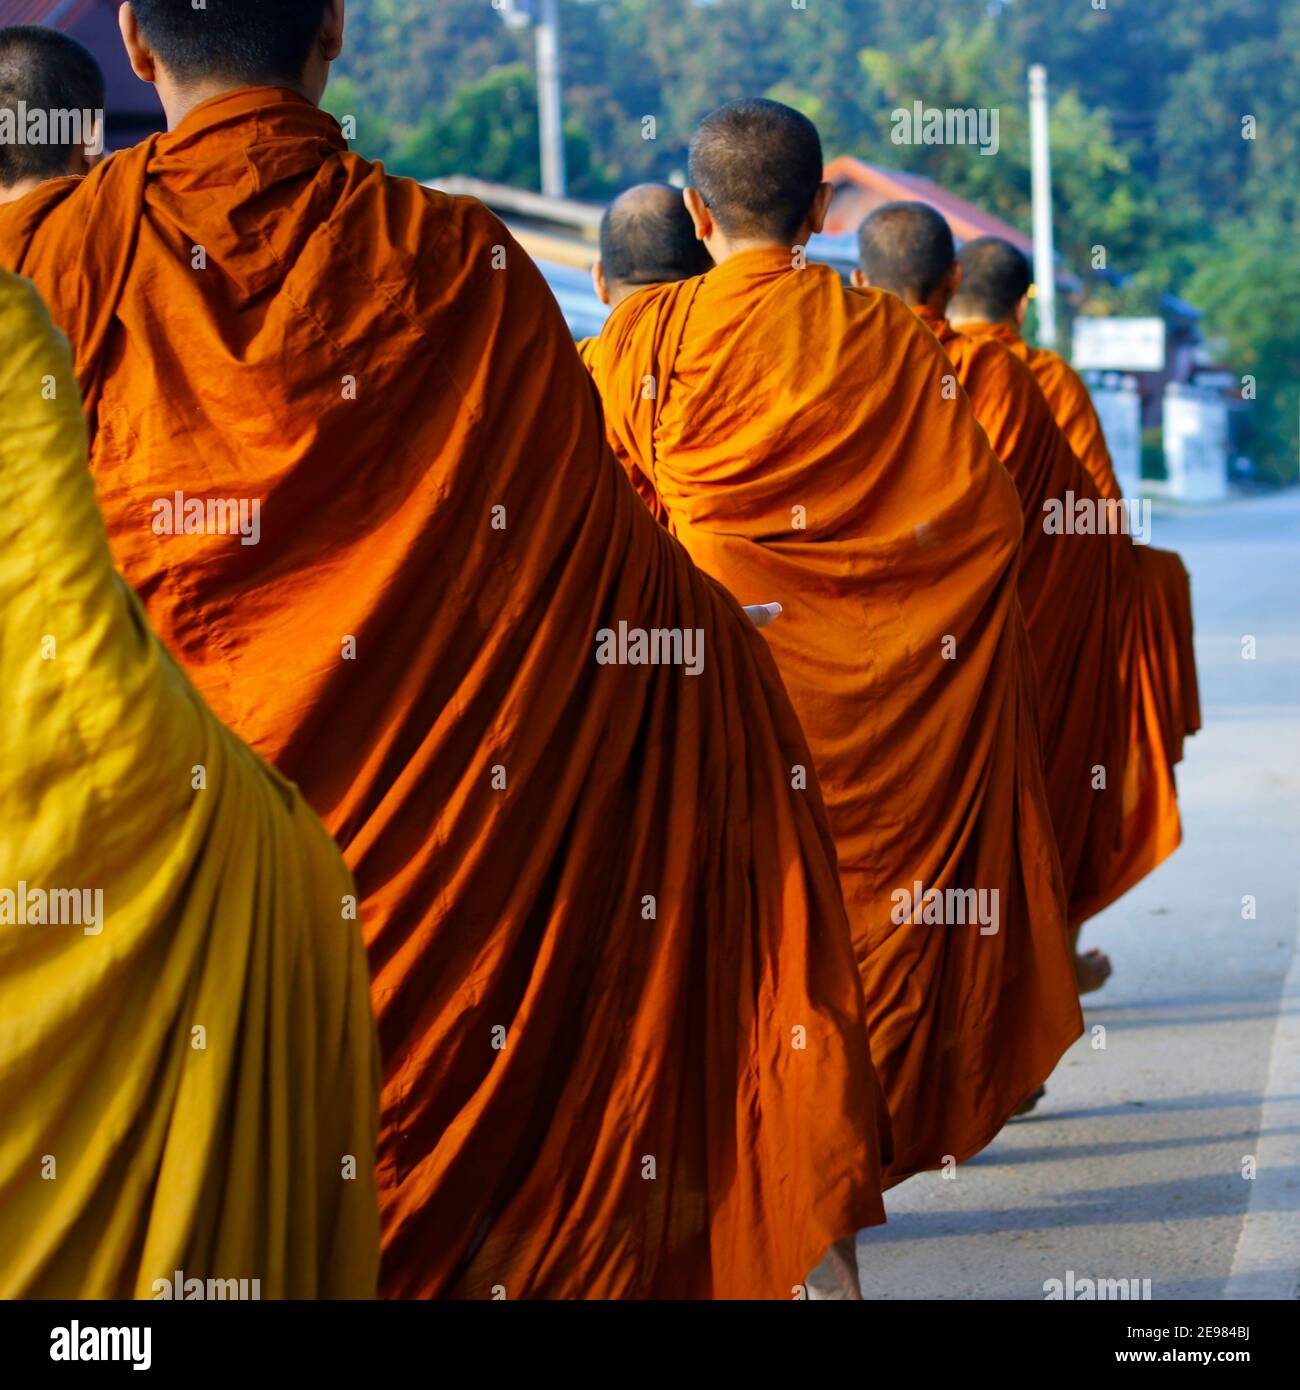 Mönche kleiden orangene Robe während des Empfangs von Almosen, um buddhistischen Tempel Stockfoto